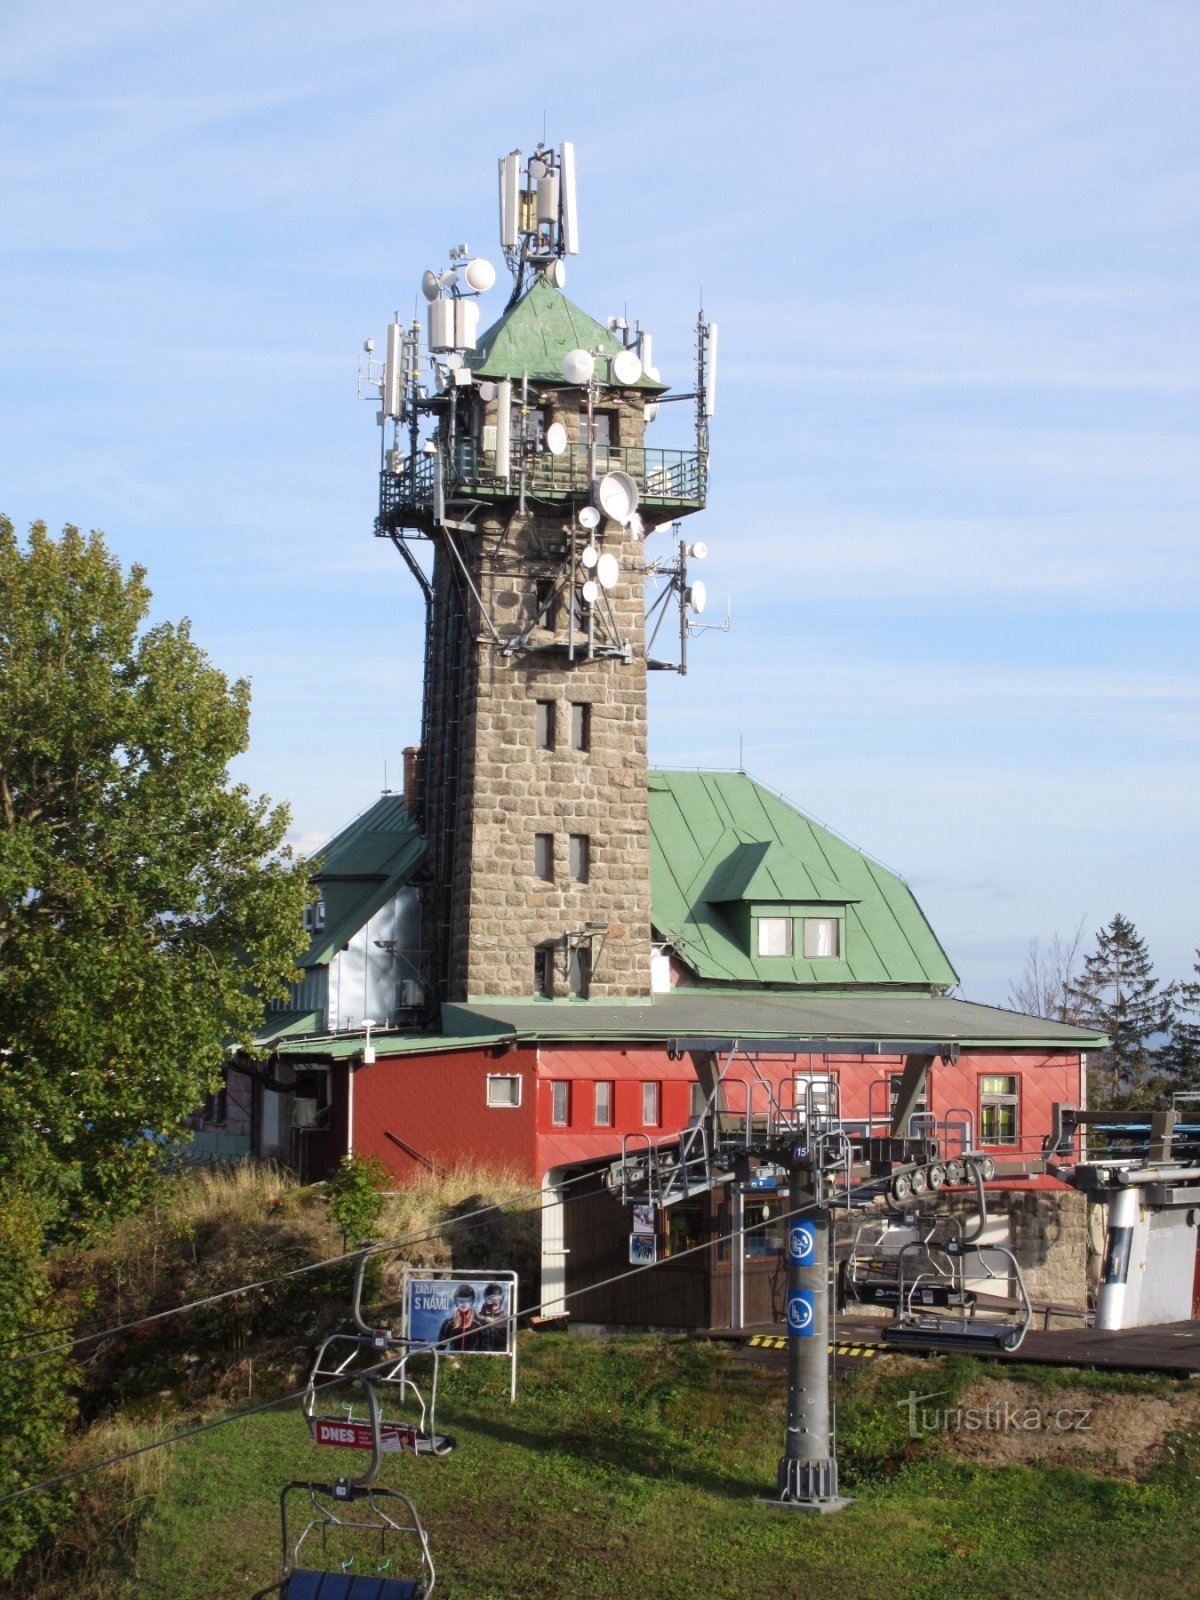 シュピチャークの見張り塔タンヴァルツキー・シュピチャーク